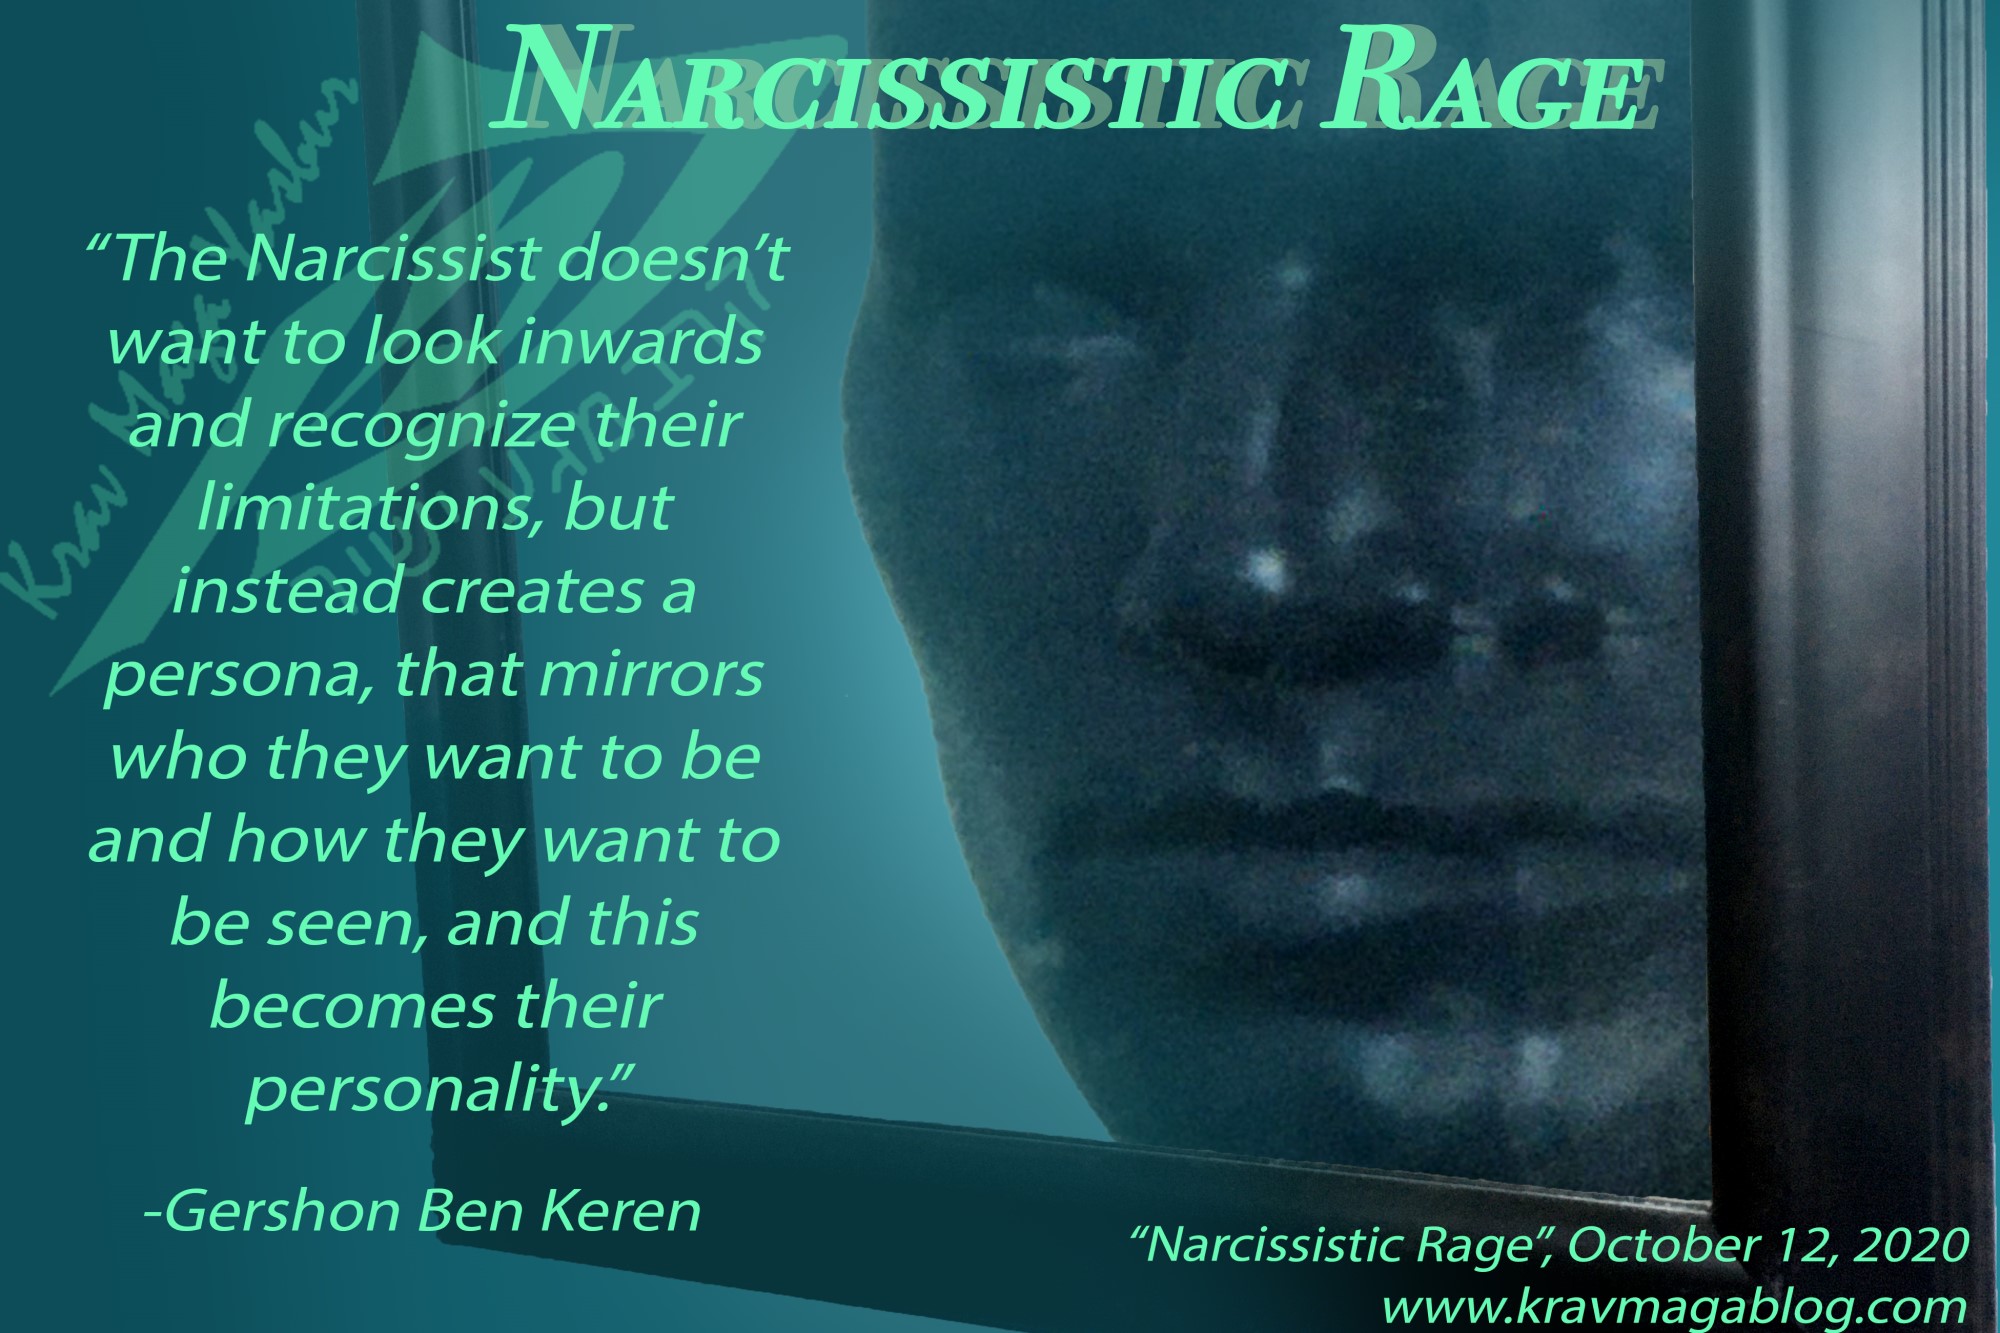 Narcissistic Rage